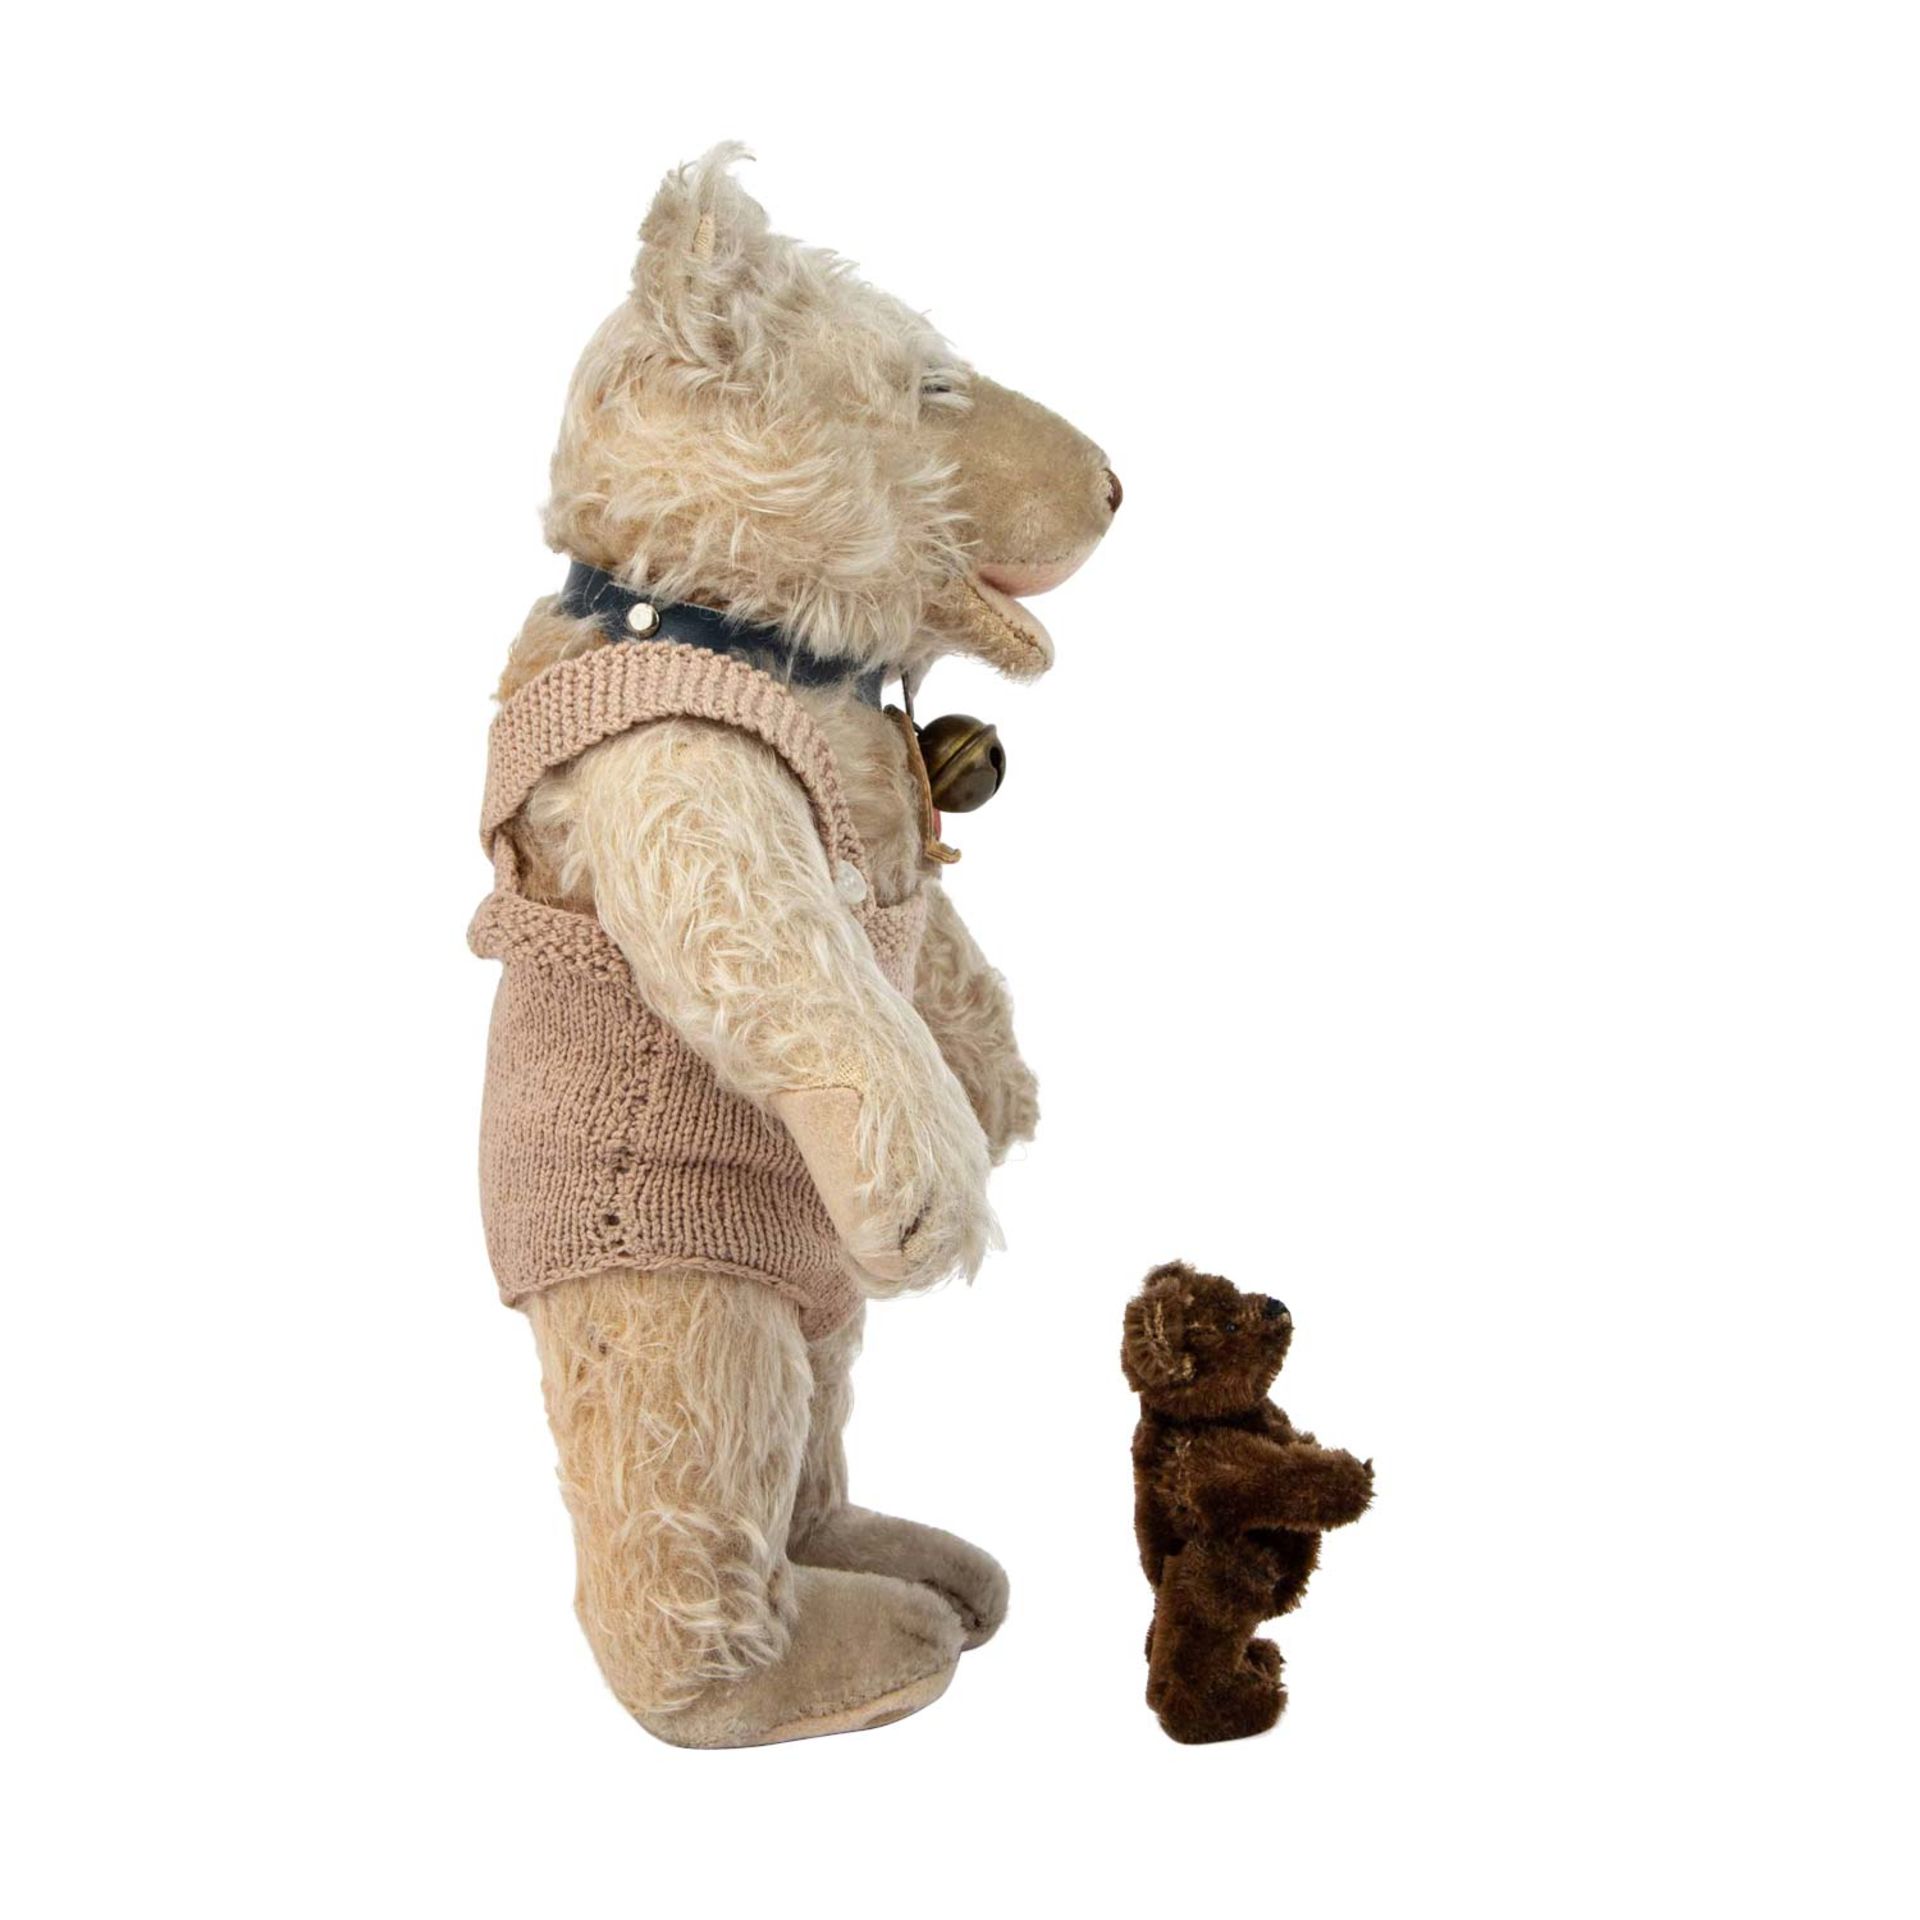 STEIFF Teddy-Baby und Miniatur -Teddy, um 1950. - Bild 5 aus 7